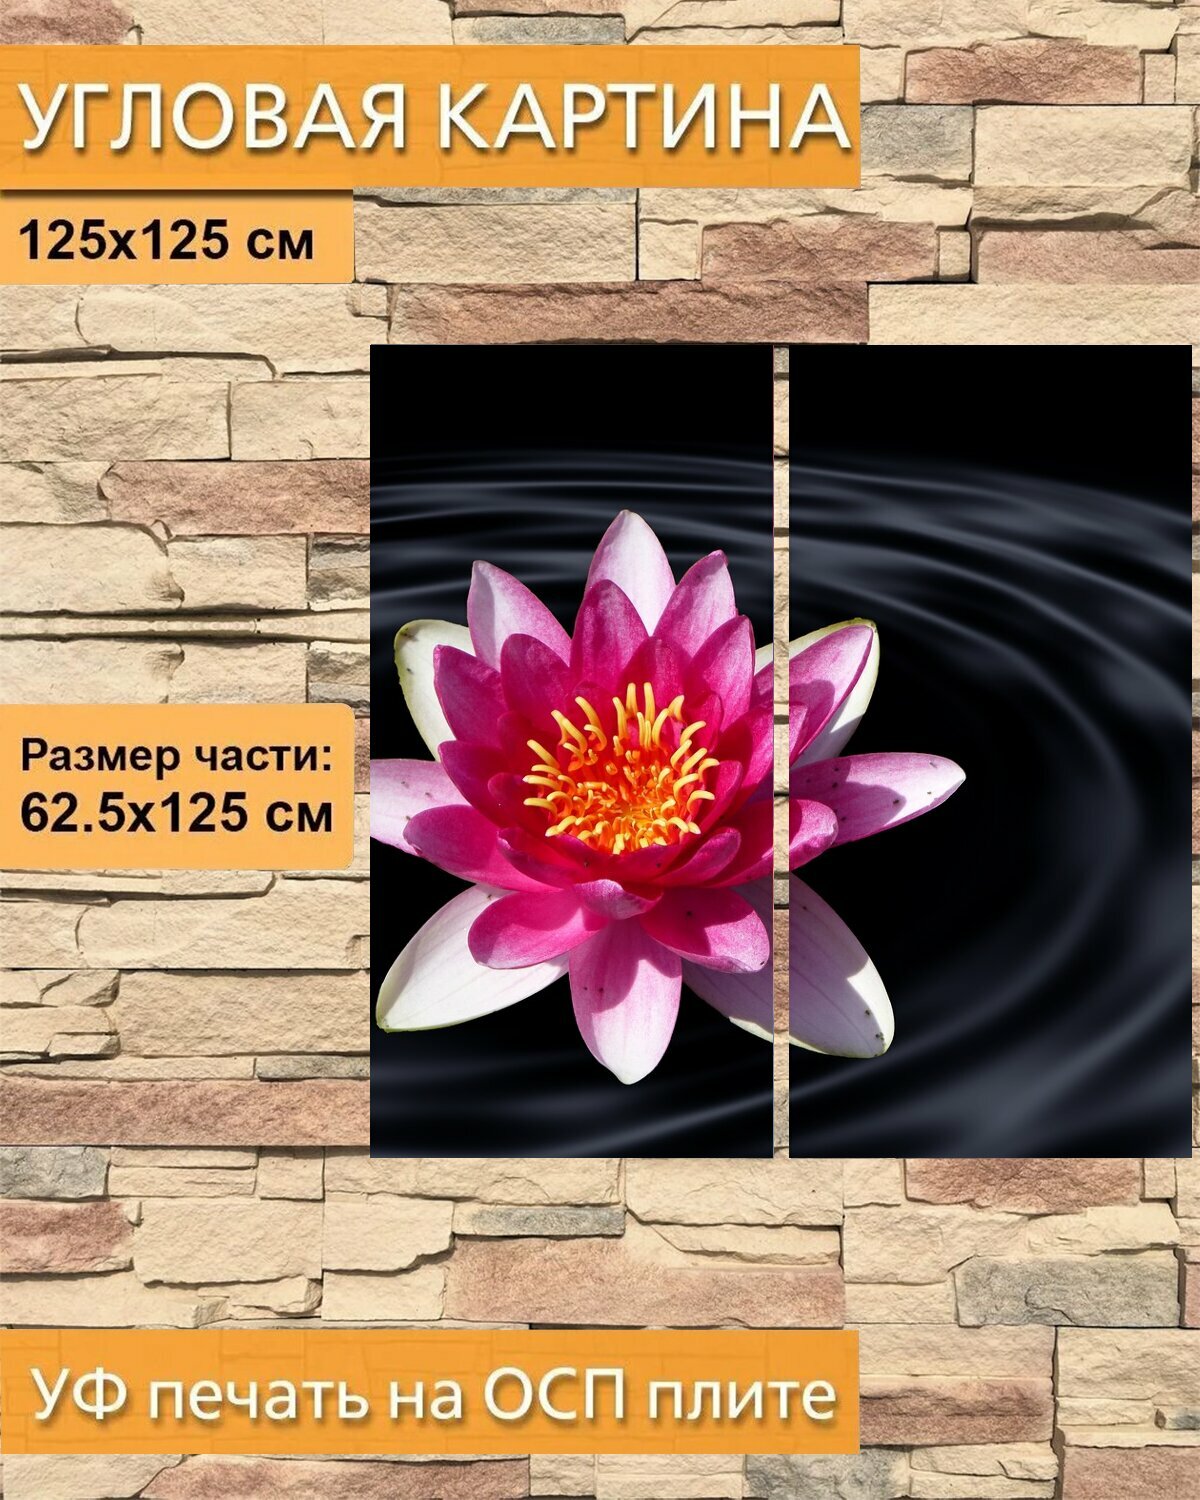 Модульная картина на ОСП "Цветок лотоса, водяная лилия, вода" 125x125 см. 2 части для интерьера на стену